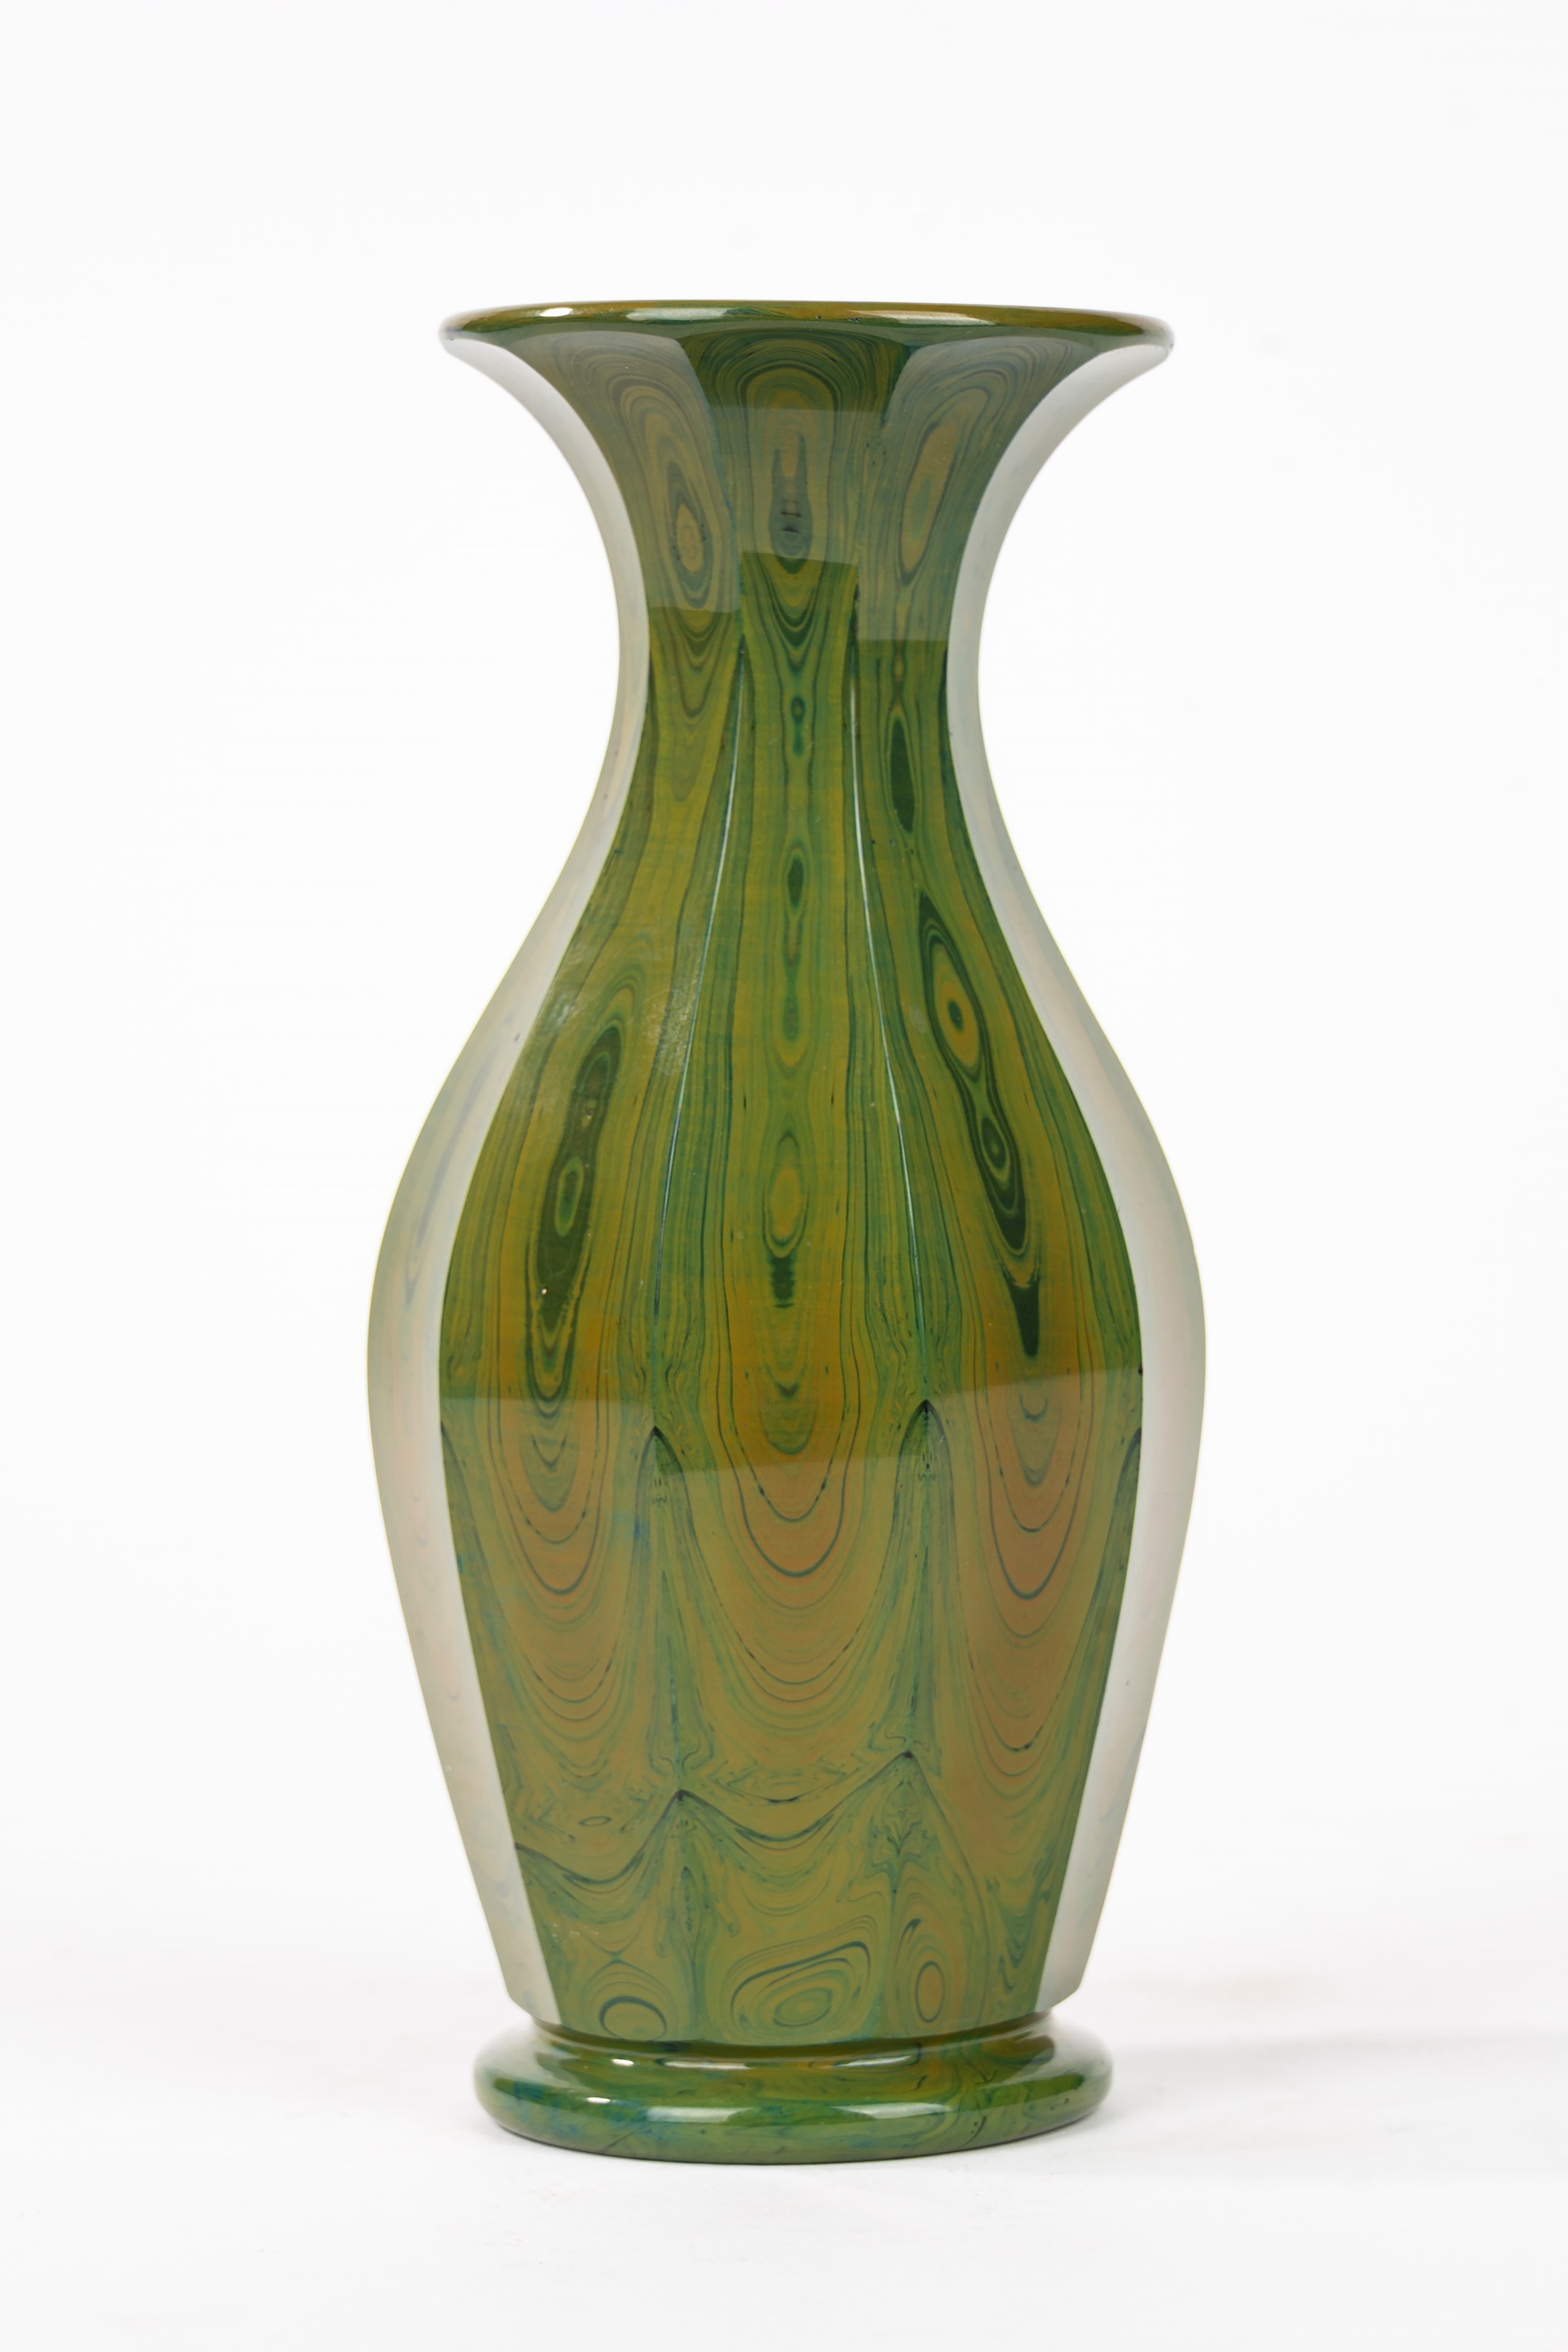 Piccolo vaso in vetro lithyalin verde, Boemia, secolo XIX, Incanti d'Arte